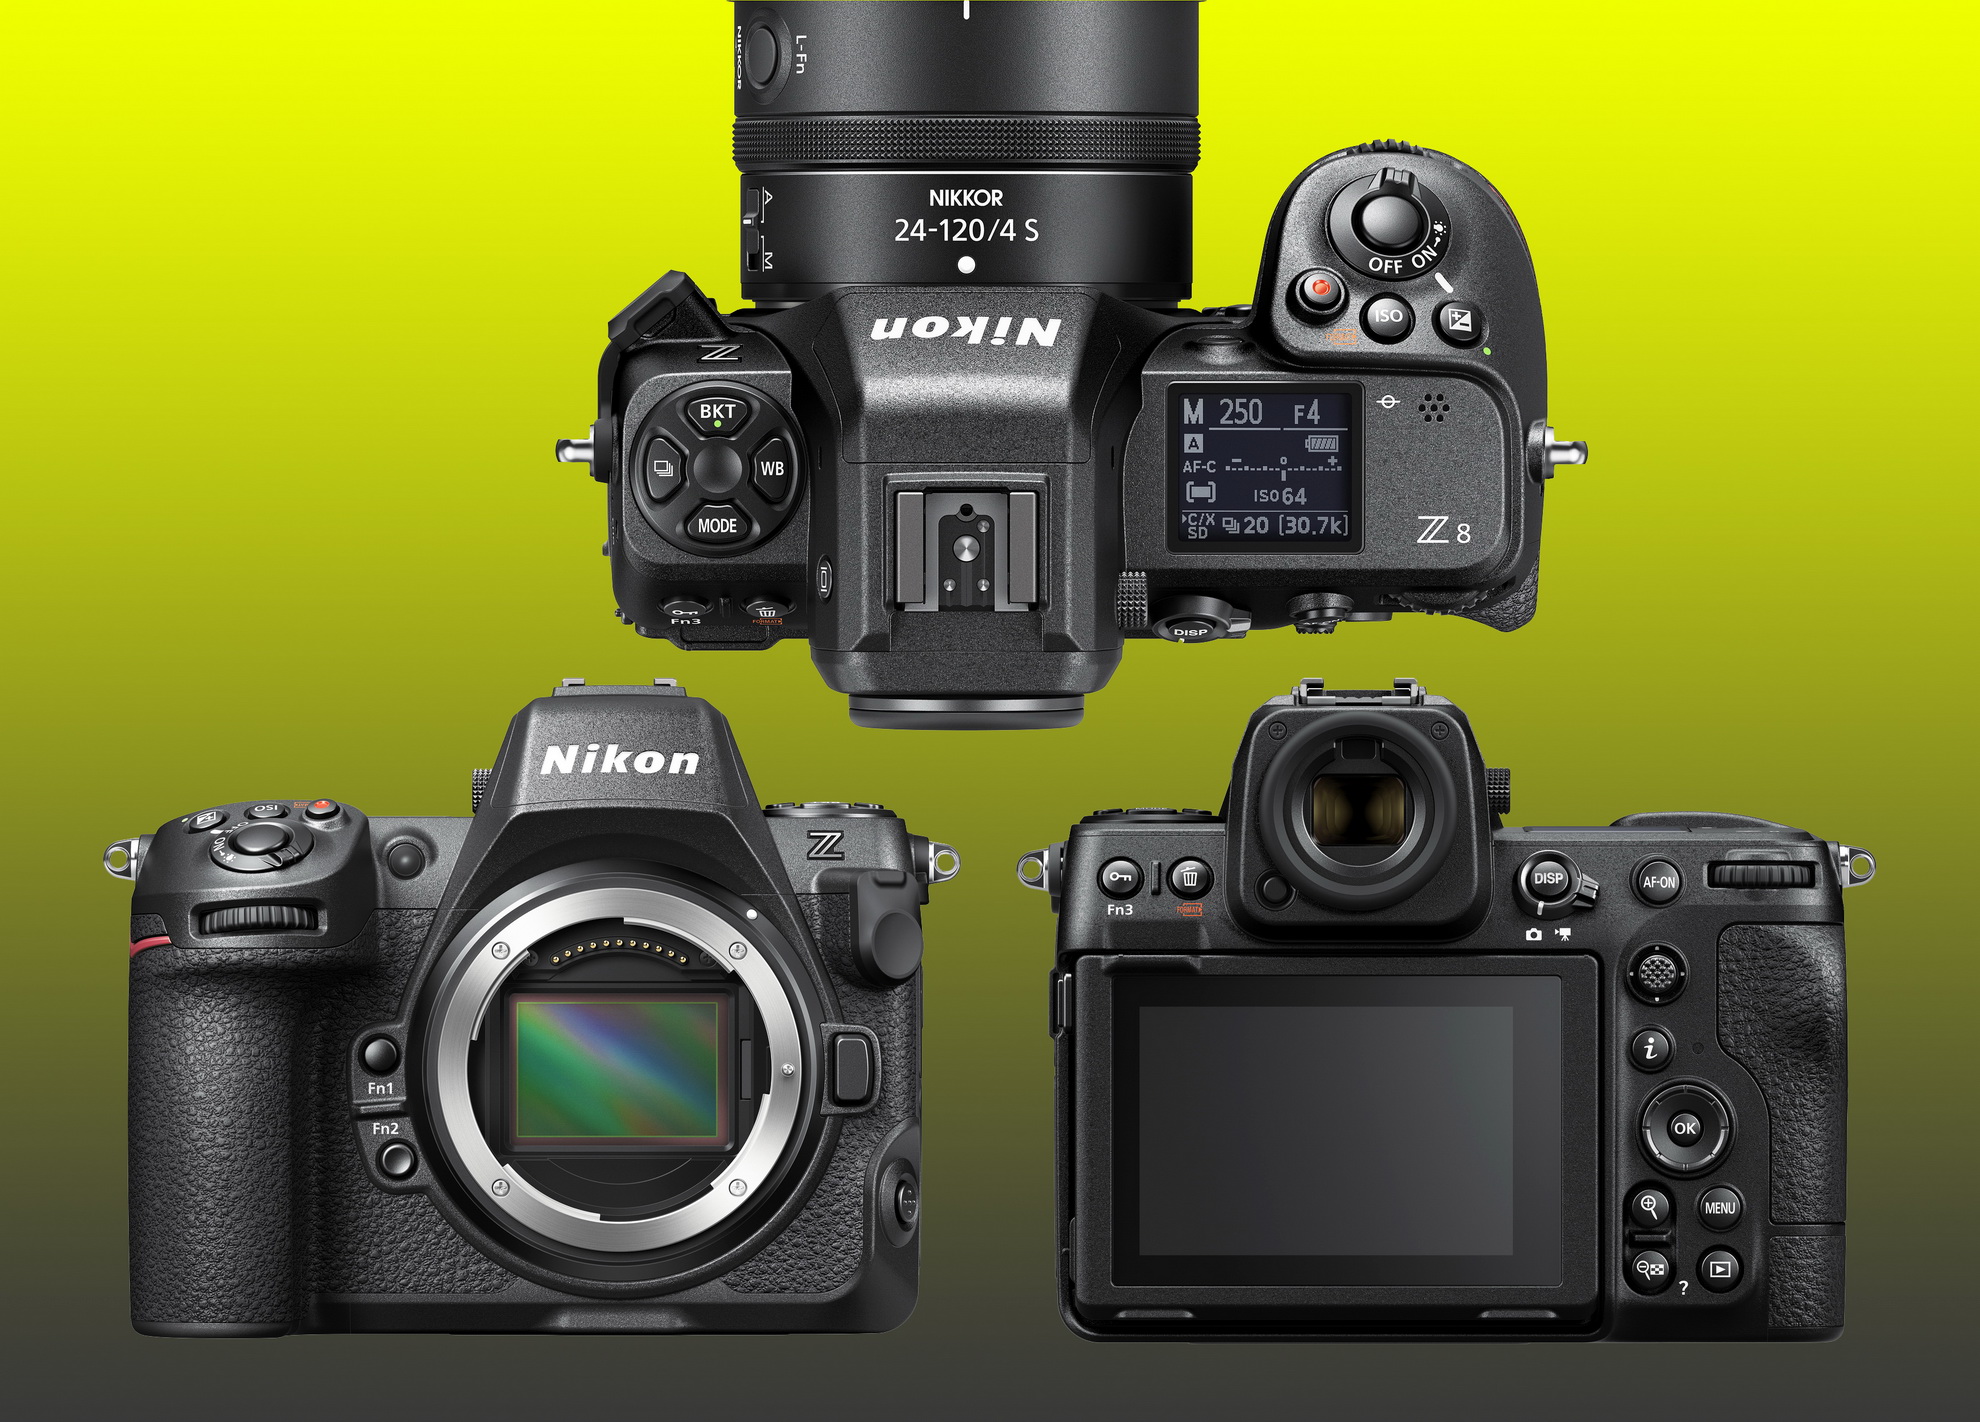 ニコンがフラッグシップモデルを小型化したフルサイズカメラ「Nikon Z 8」を発表